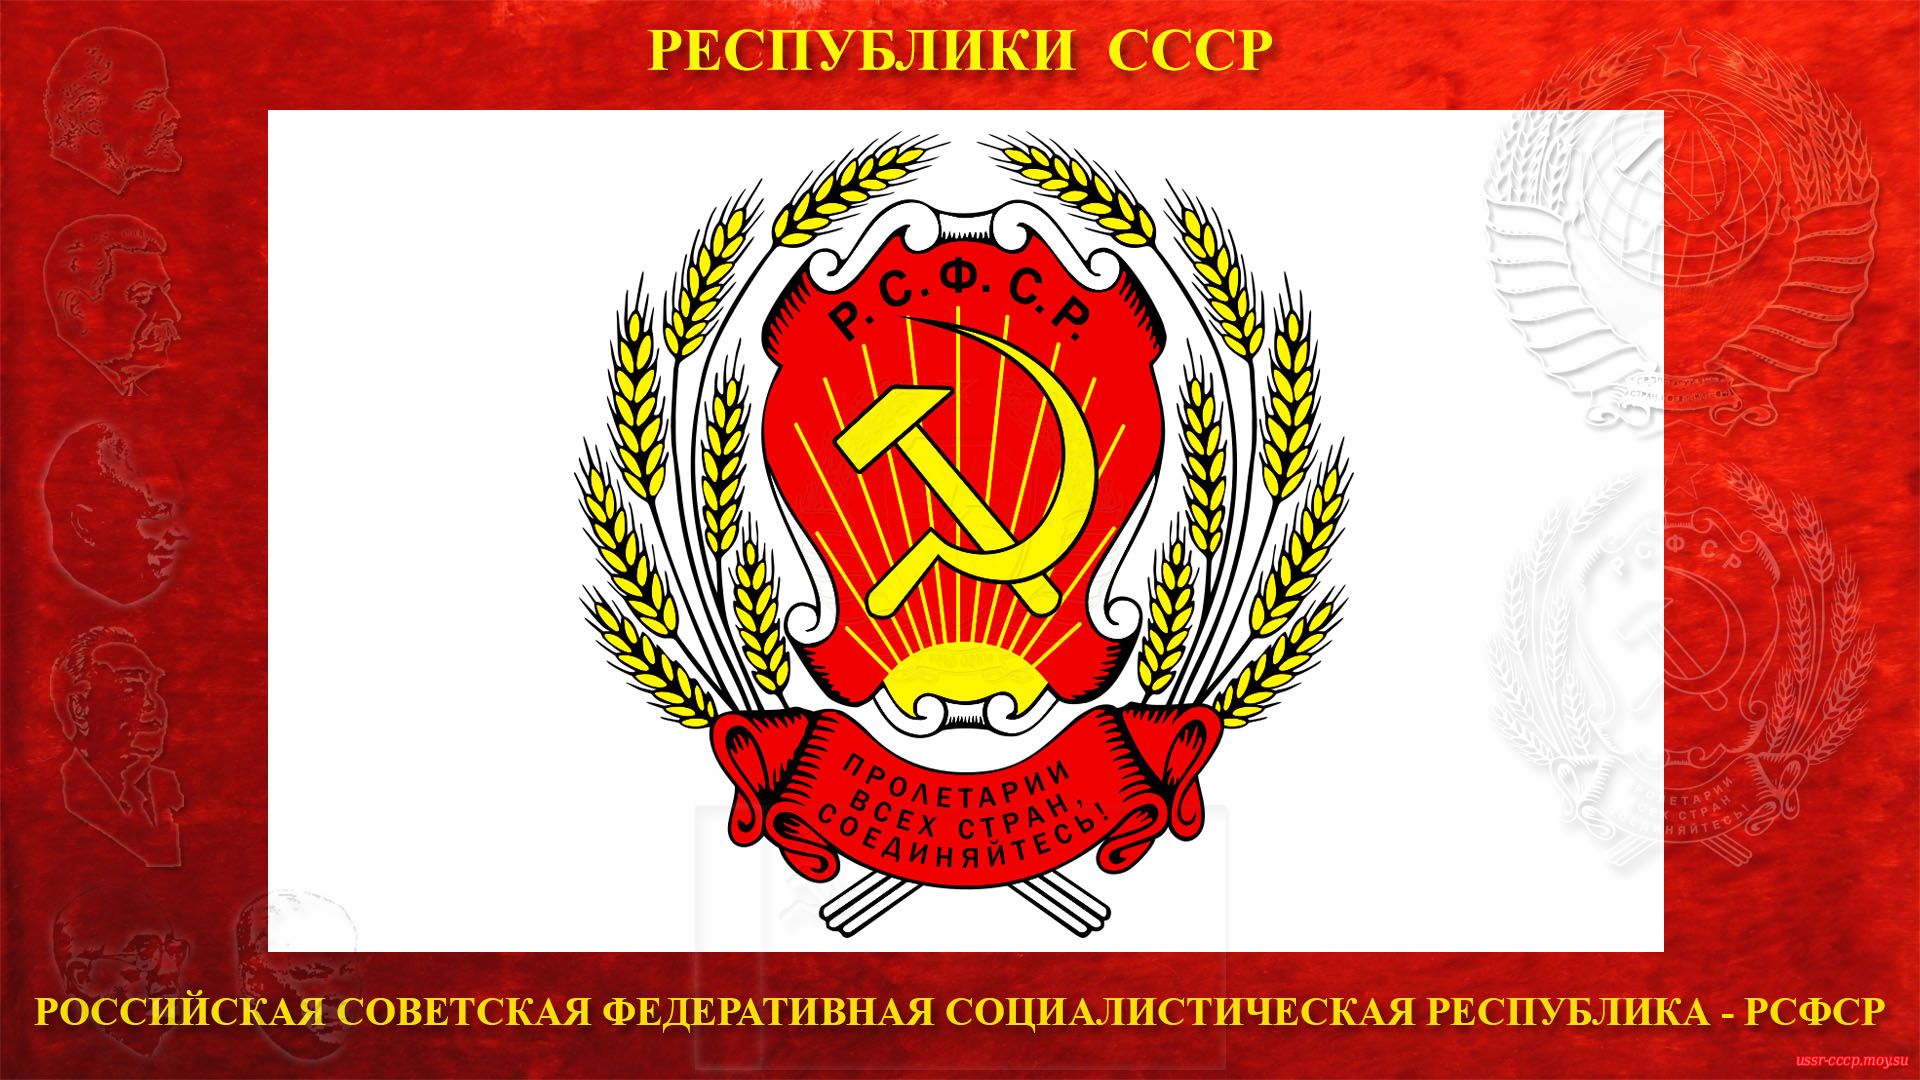 Герб Российской Советской Федеративной Социалистической Республики (РСФСР) (1920—1978).